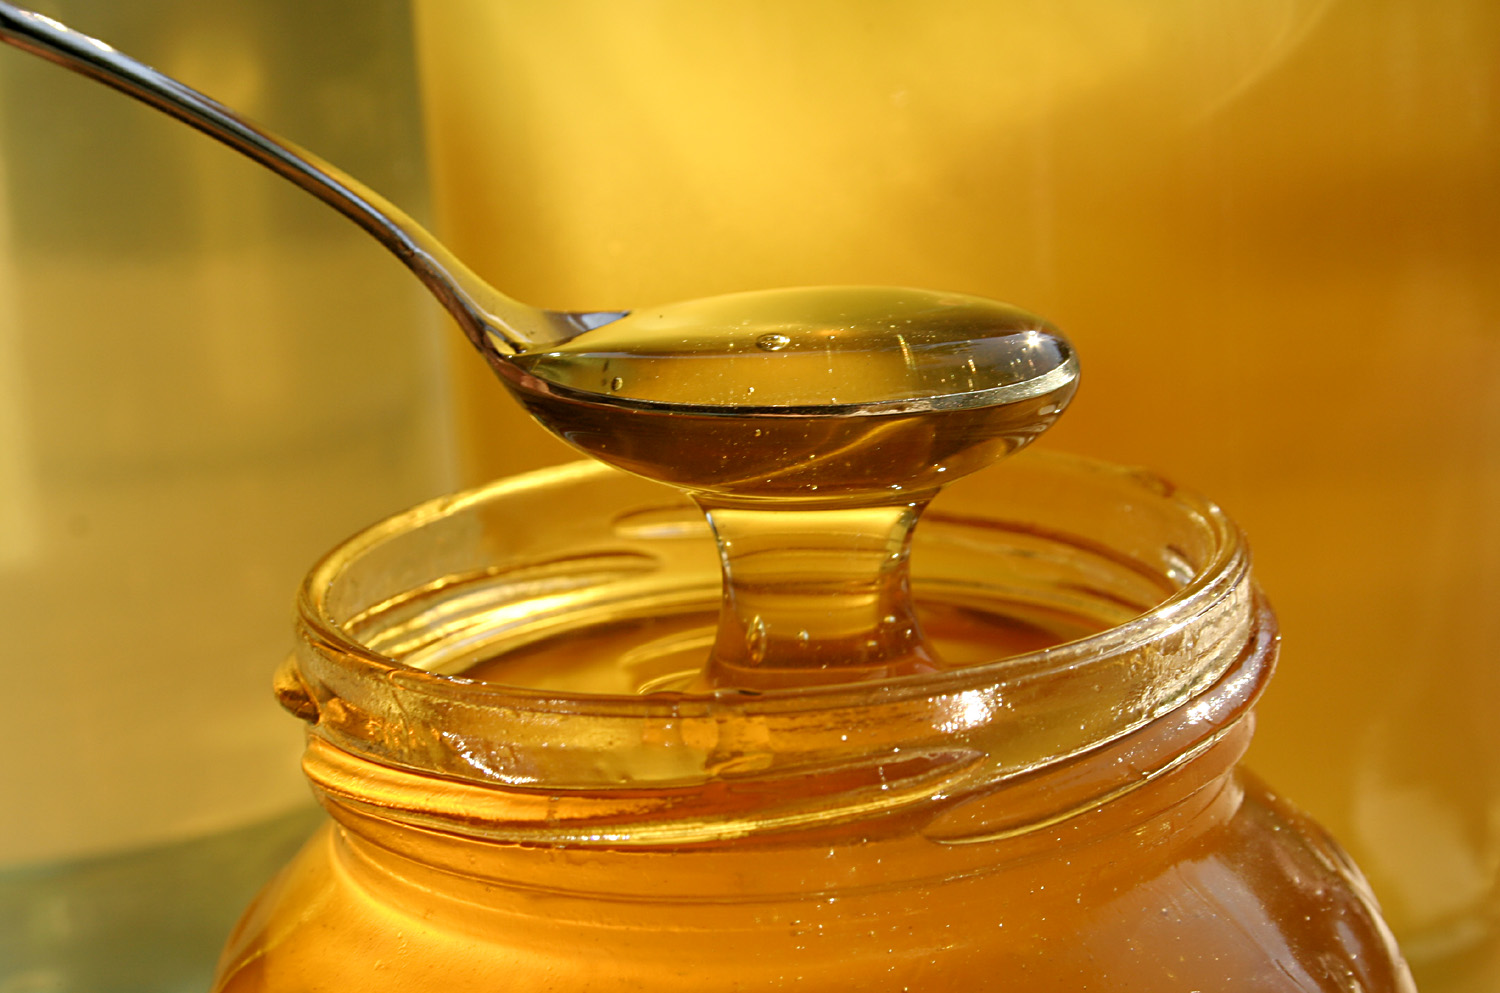 Nếu bạn uống nước mật ong ngay khi thức dậy, khi bụng đang đói… sẽ không thích hợp